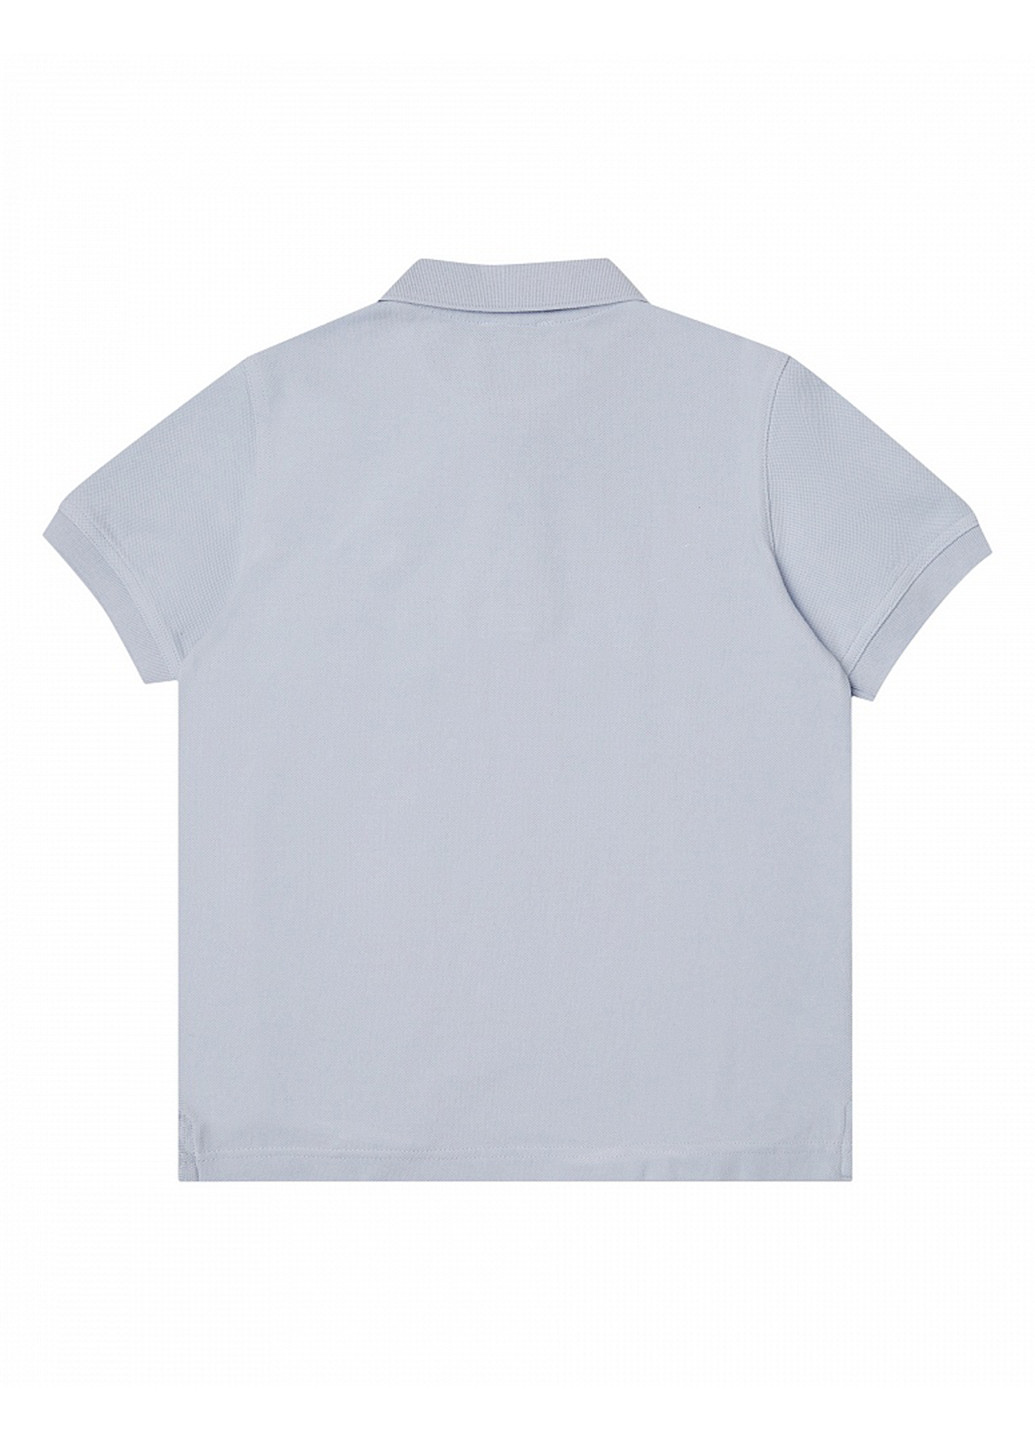 Светло-серая детская футболка-поло для мальчика United Colors of Benetton однотонная